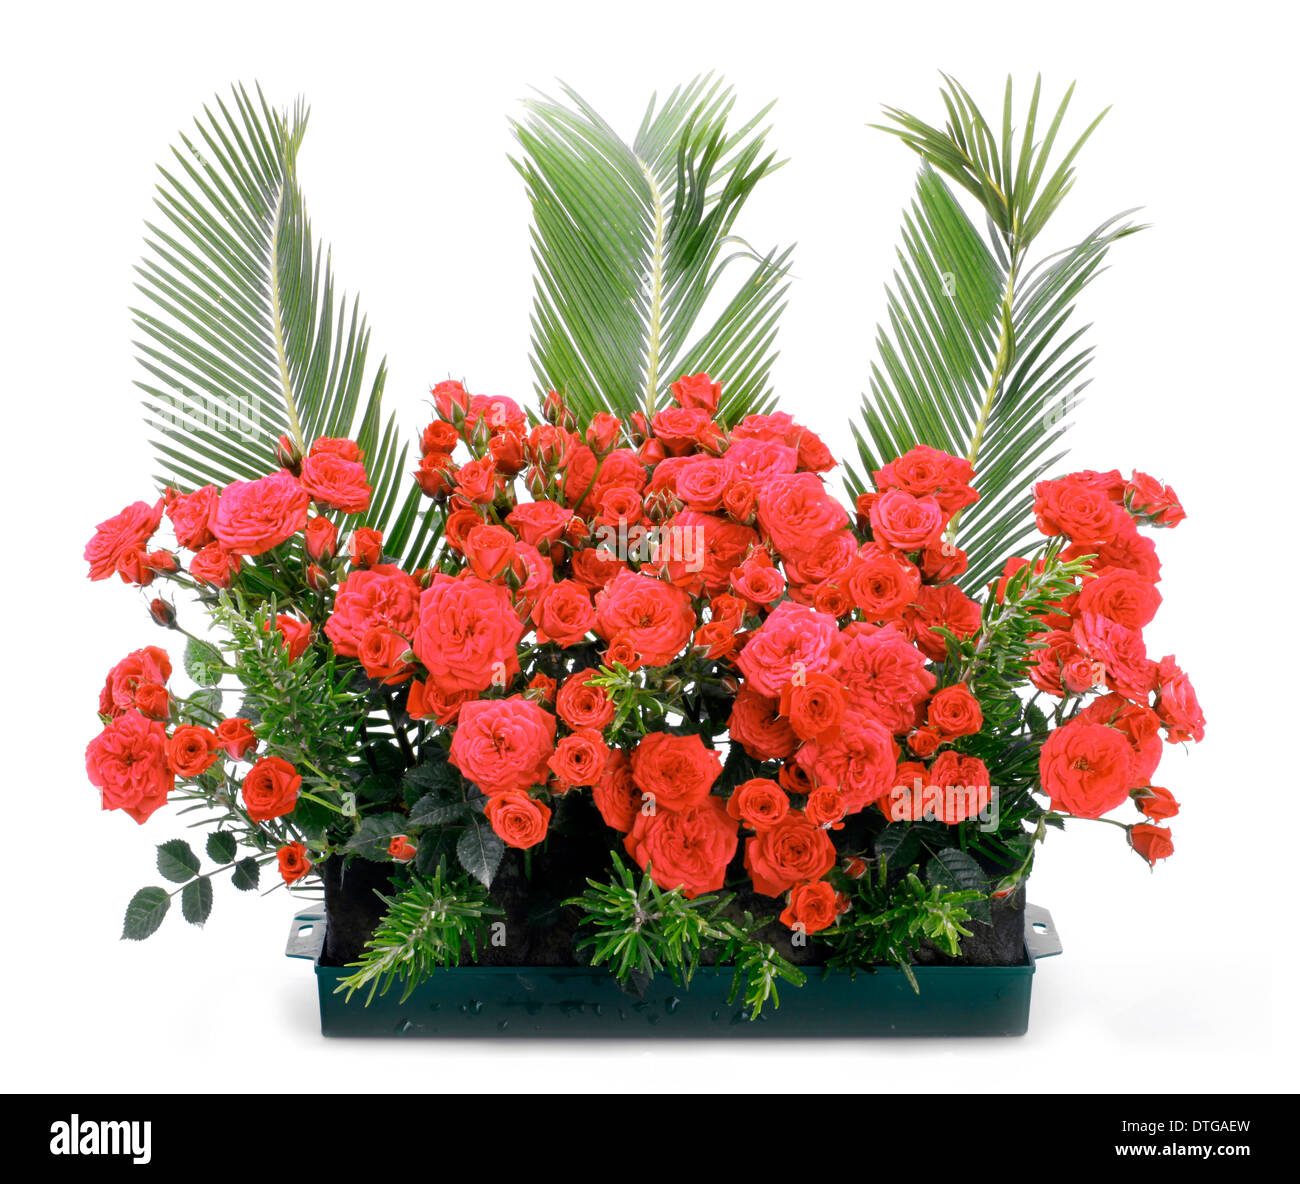 Blumentopf mit kleinen roten Rosen und Niederlassungen von Cycas Revoluta. Stockfoto